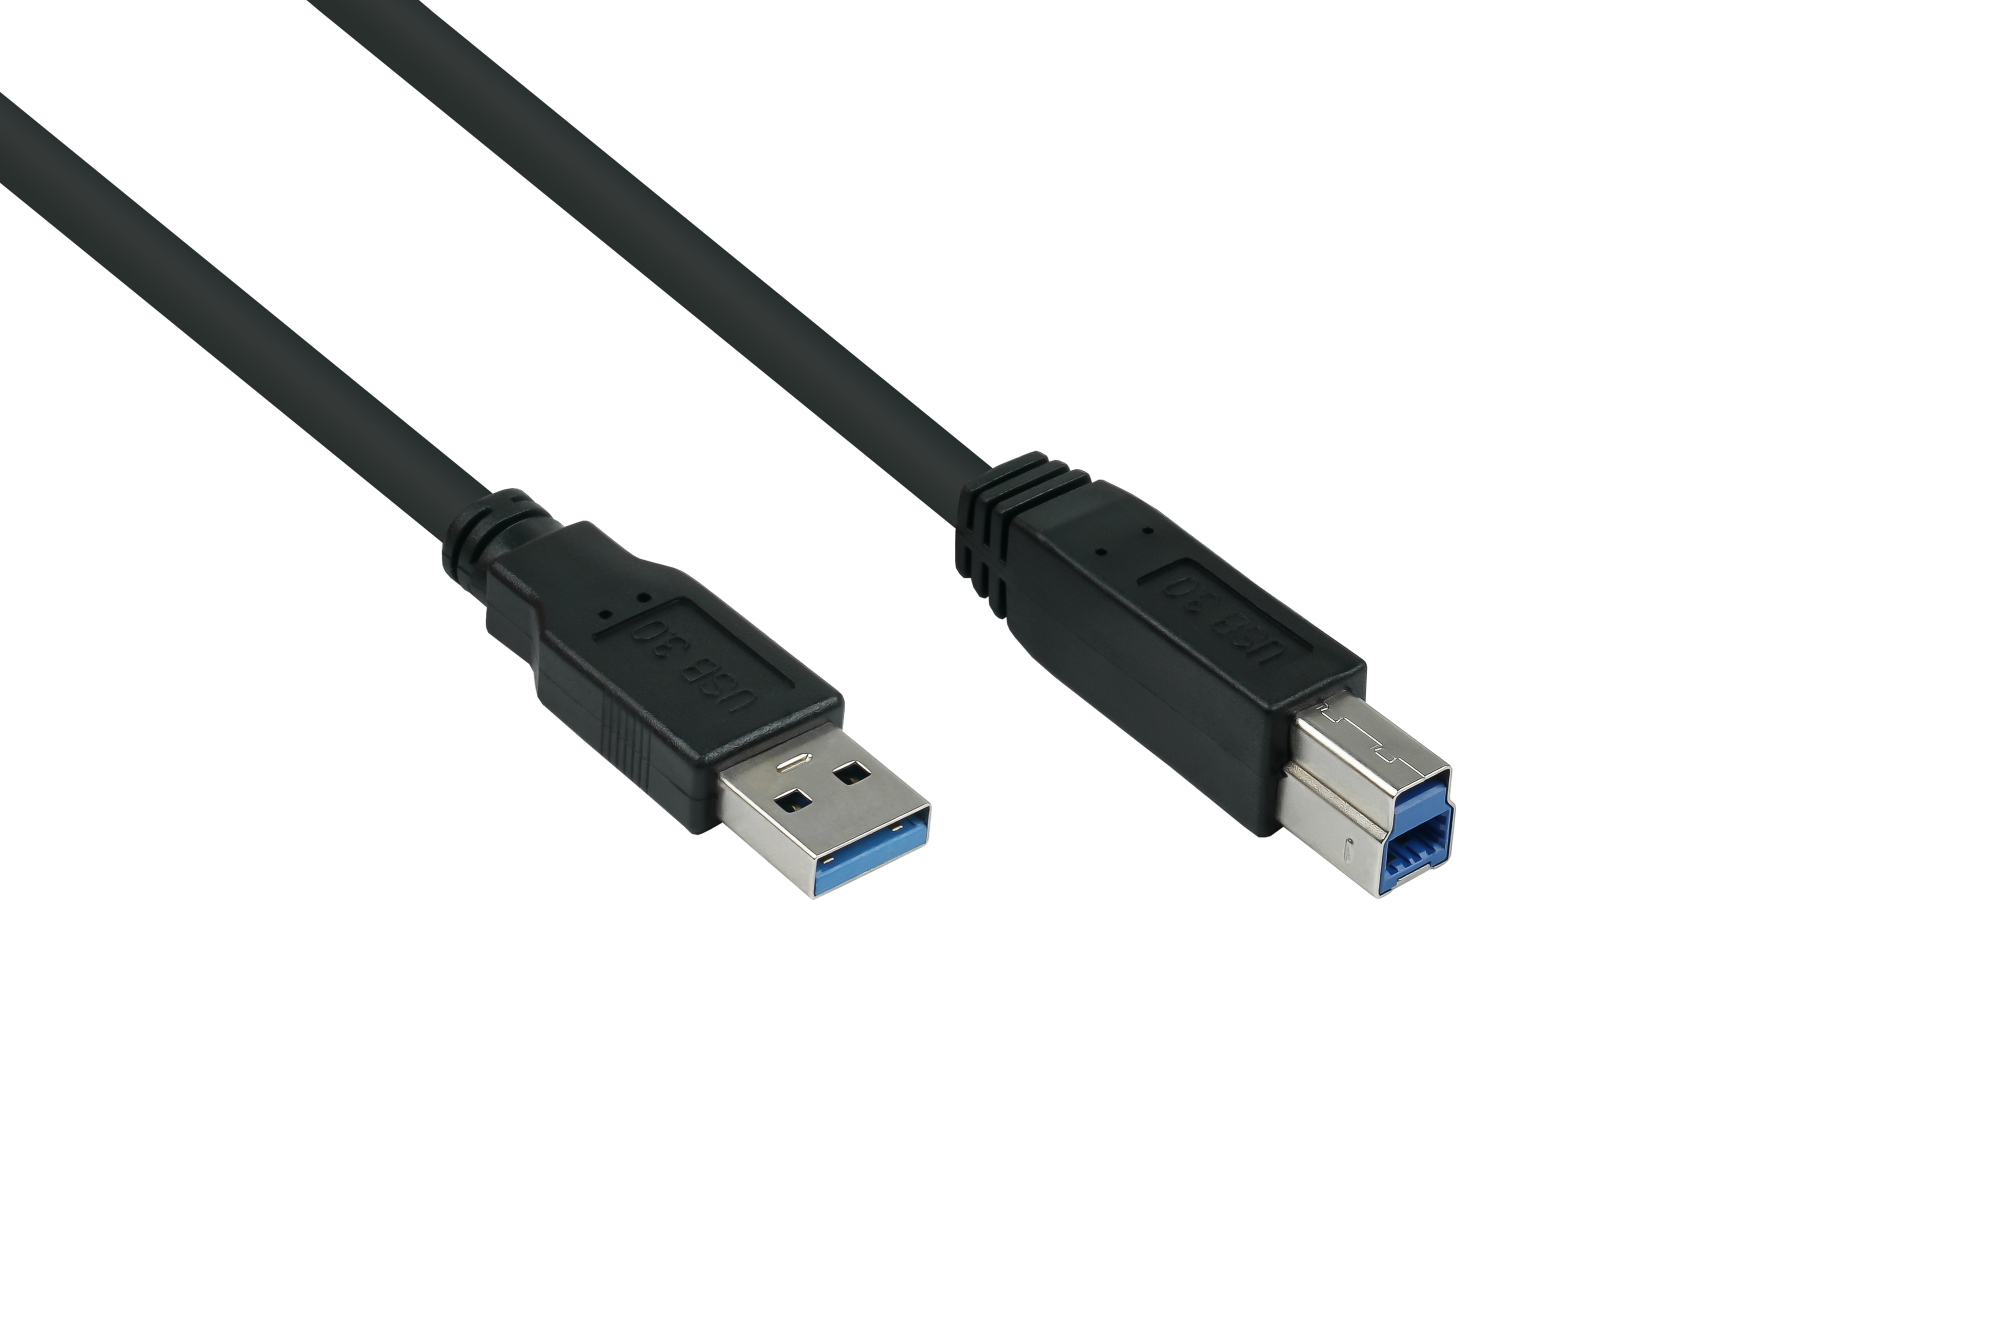 USB 3.0 Kabel Stecker A an Stecker B, Premium, AWG28 / AWG24, UL, KUPFER, schwarz, 3m